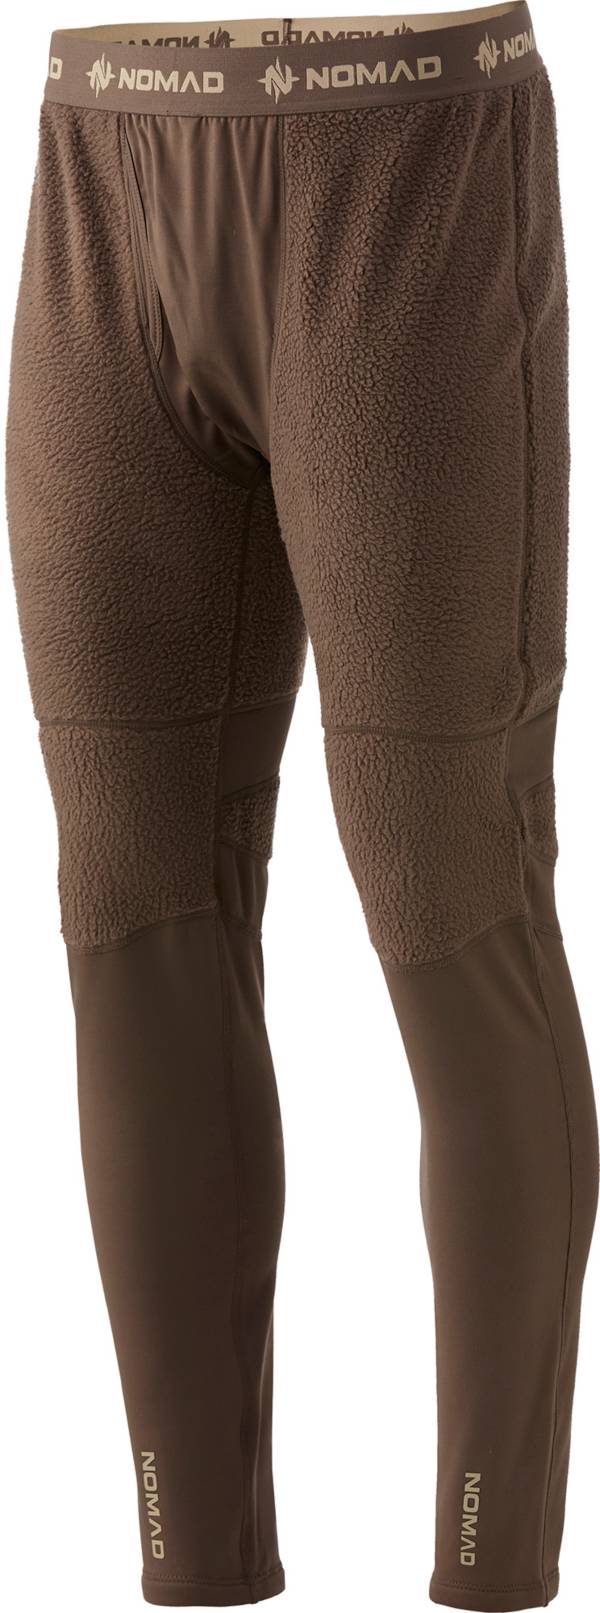 Nomad Men's Cottonwood Baselayer Legging product image